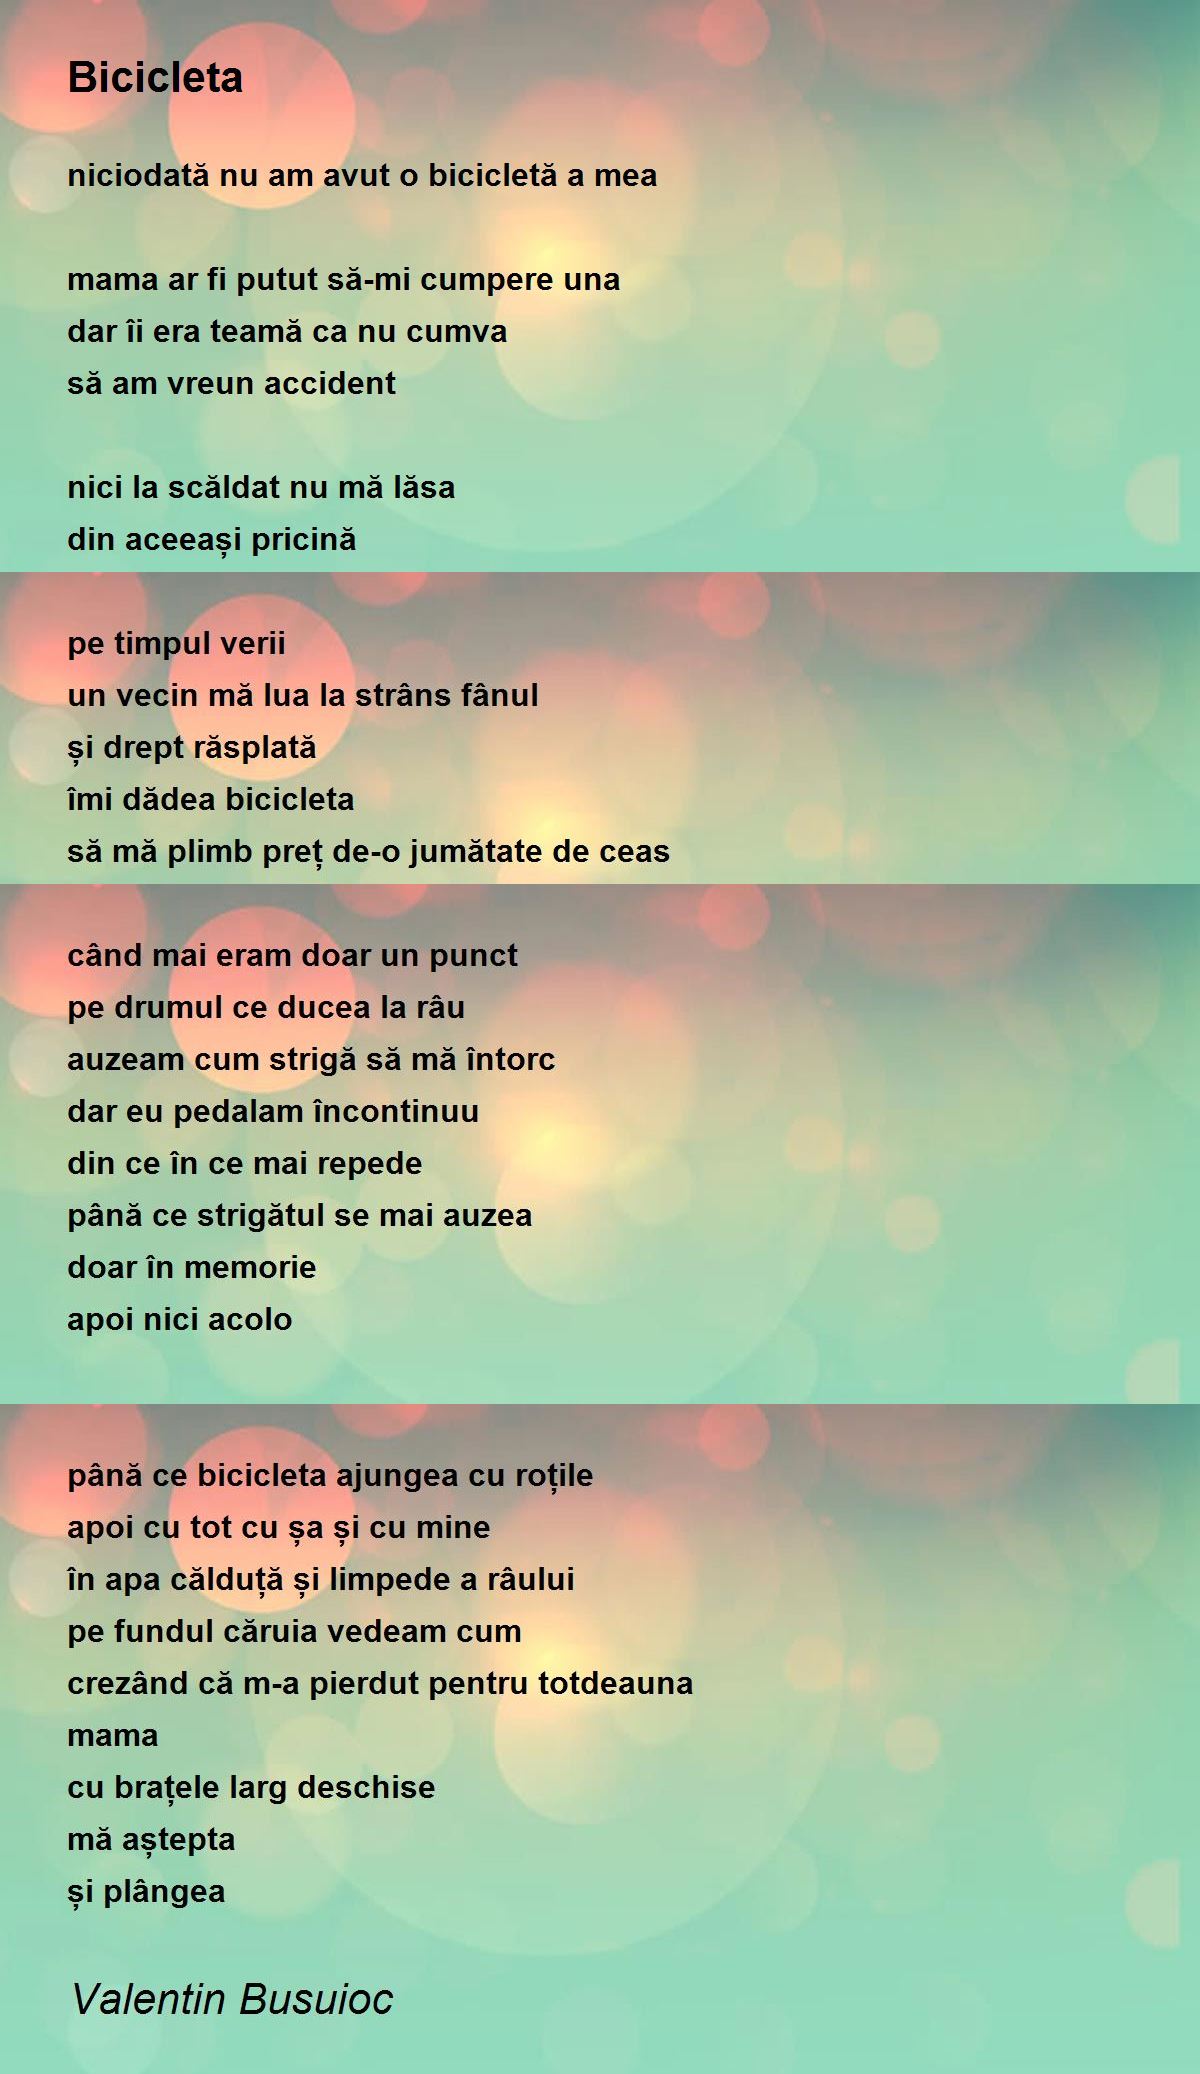 Bicicleta - Poem by Valentin Busuioc